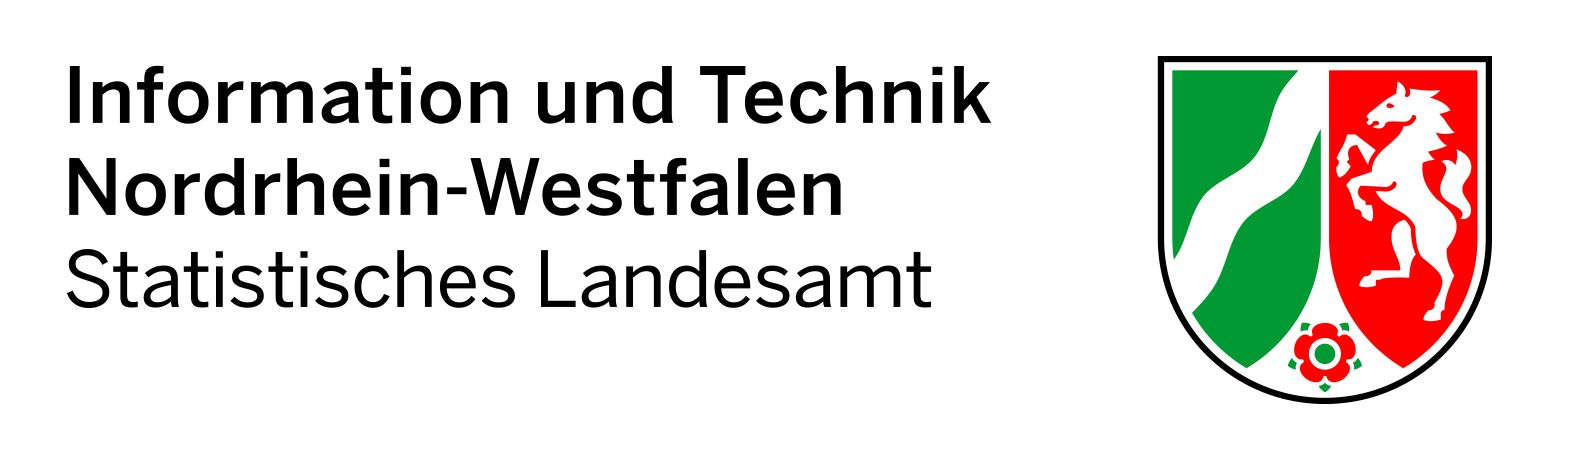 Logo Information und Technik Nordrhein-Westfalen (IT.NRW) - Statistisches Landesamt Nordrhein-Westfalen